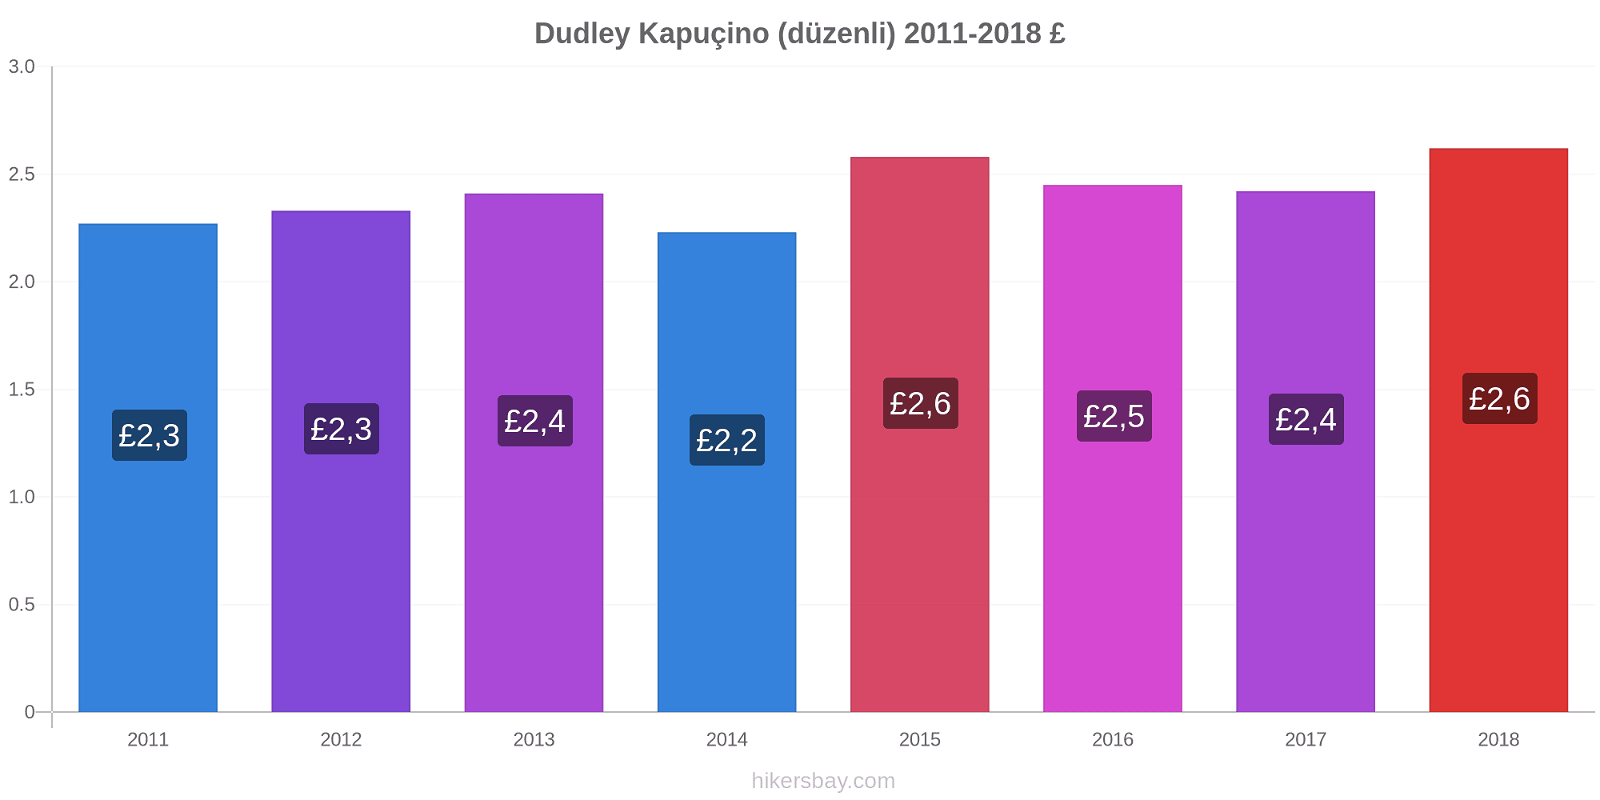 Dudley fiyat değişiklikleri Kapuçino (düzenli) hikersbay.com